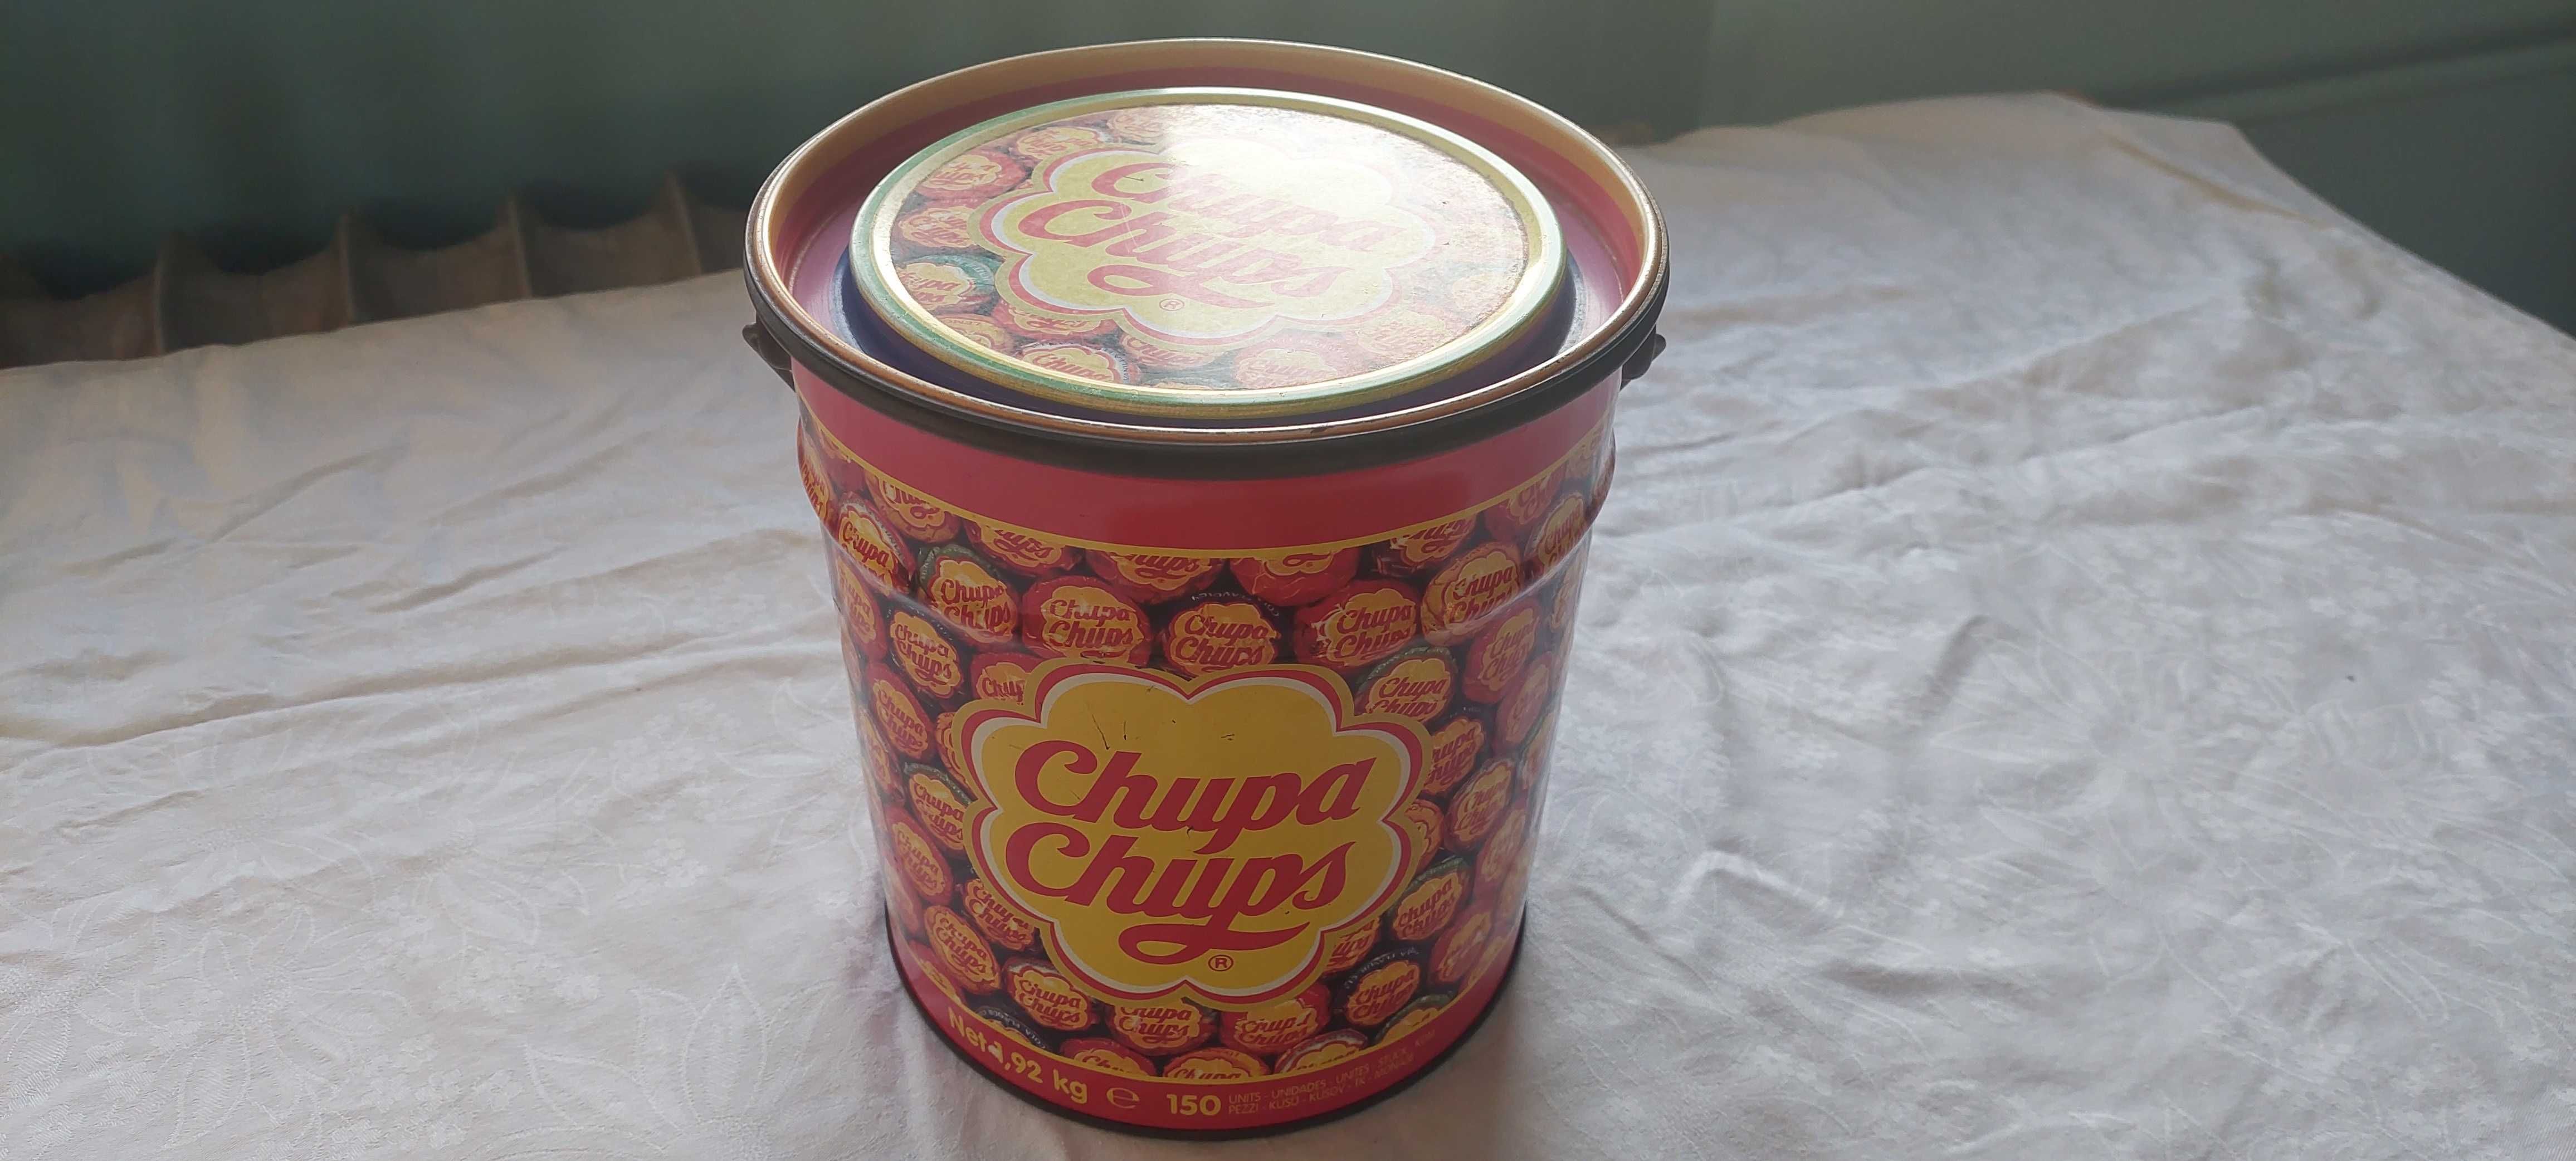 Pudełko Chupa Chups pocz. lat 90-tych XX w.